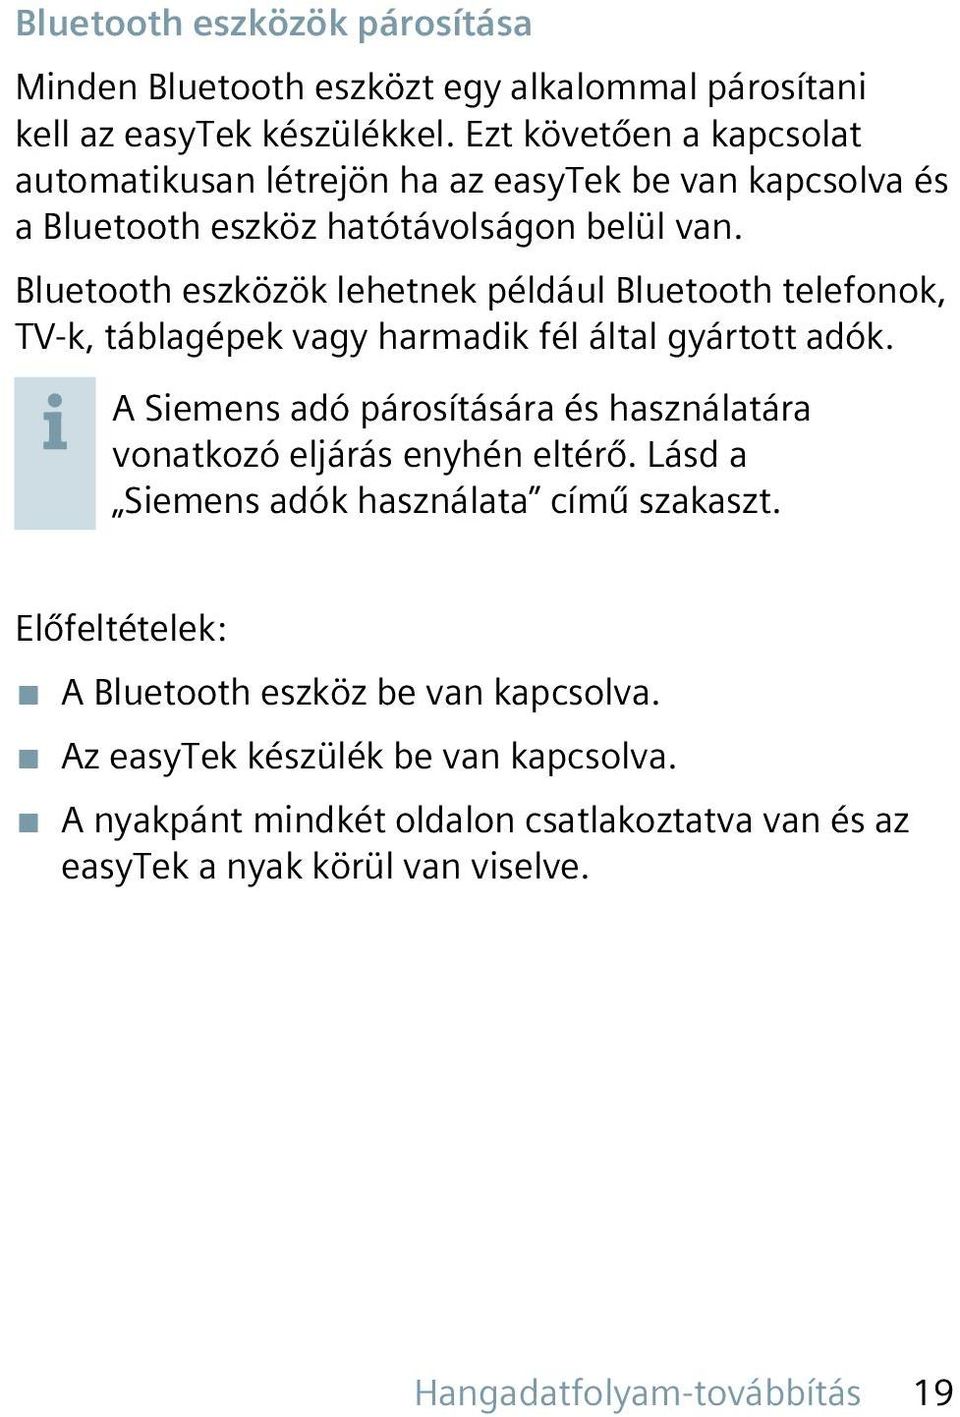 Bluetooth eszközök lehetnek például Bluetooth telefonok, TV-k, táblagépek vagy harmadik fél által gyártott adók.